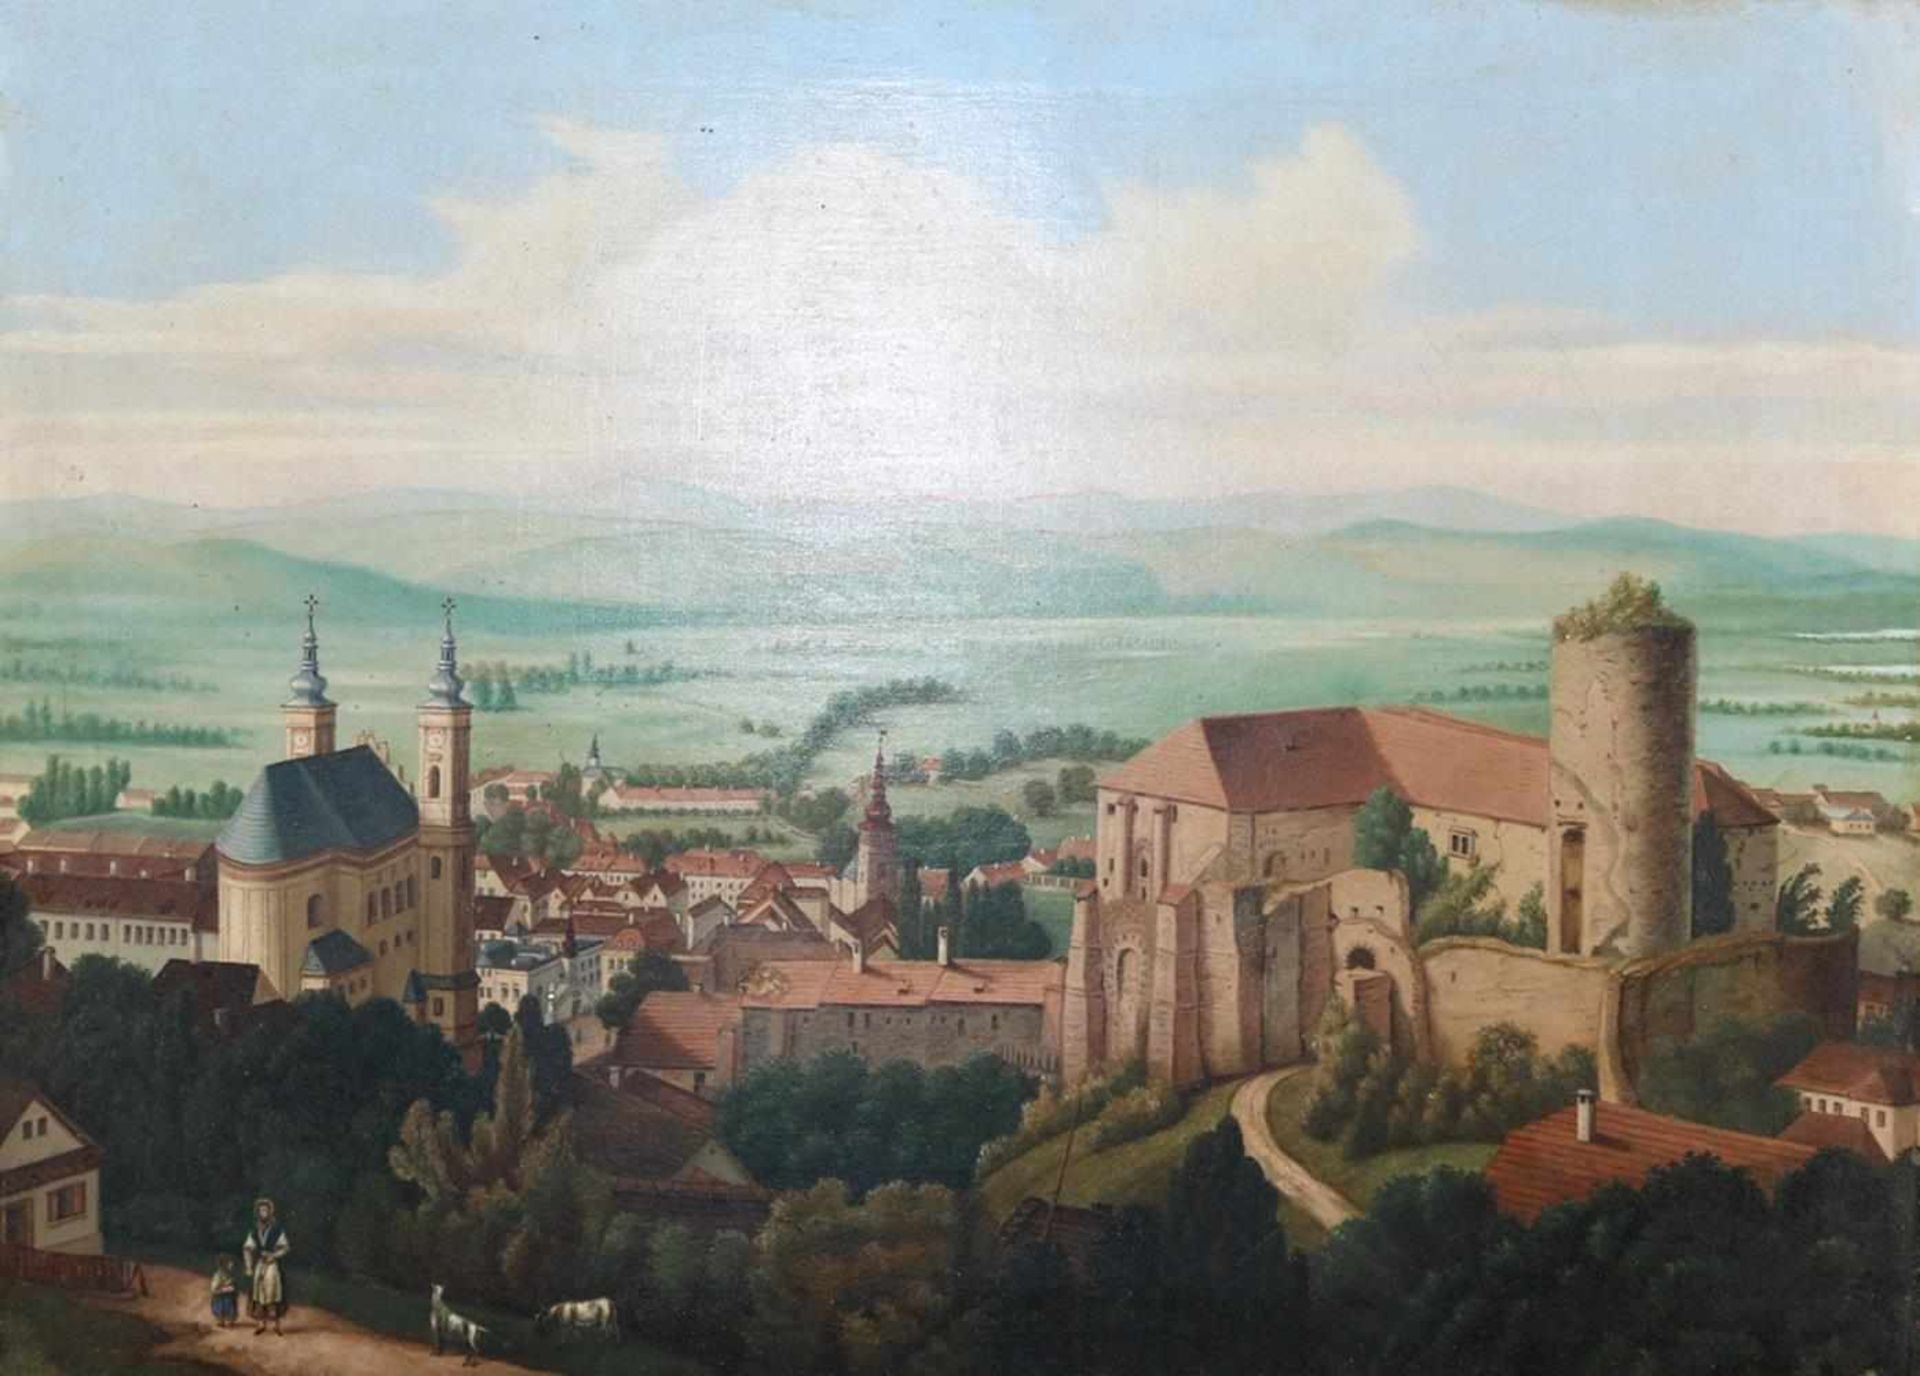 Burg Cesky Sternberk.Blick auf die Burg Sternberg, im Hintergrund das Tal der Sßzava. Anonymes Öl